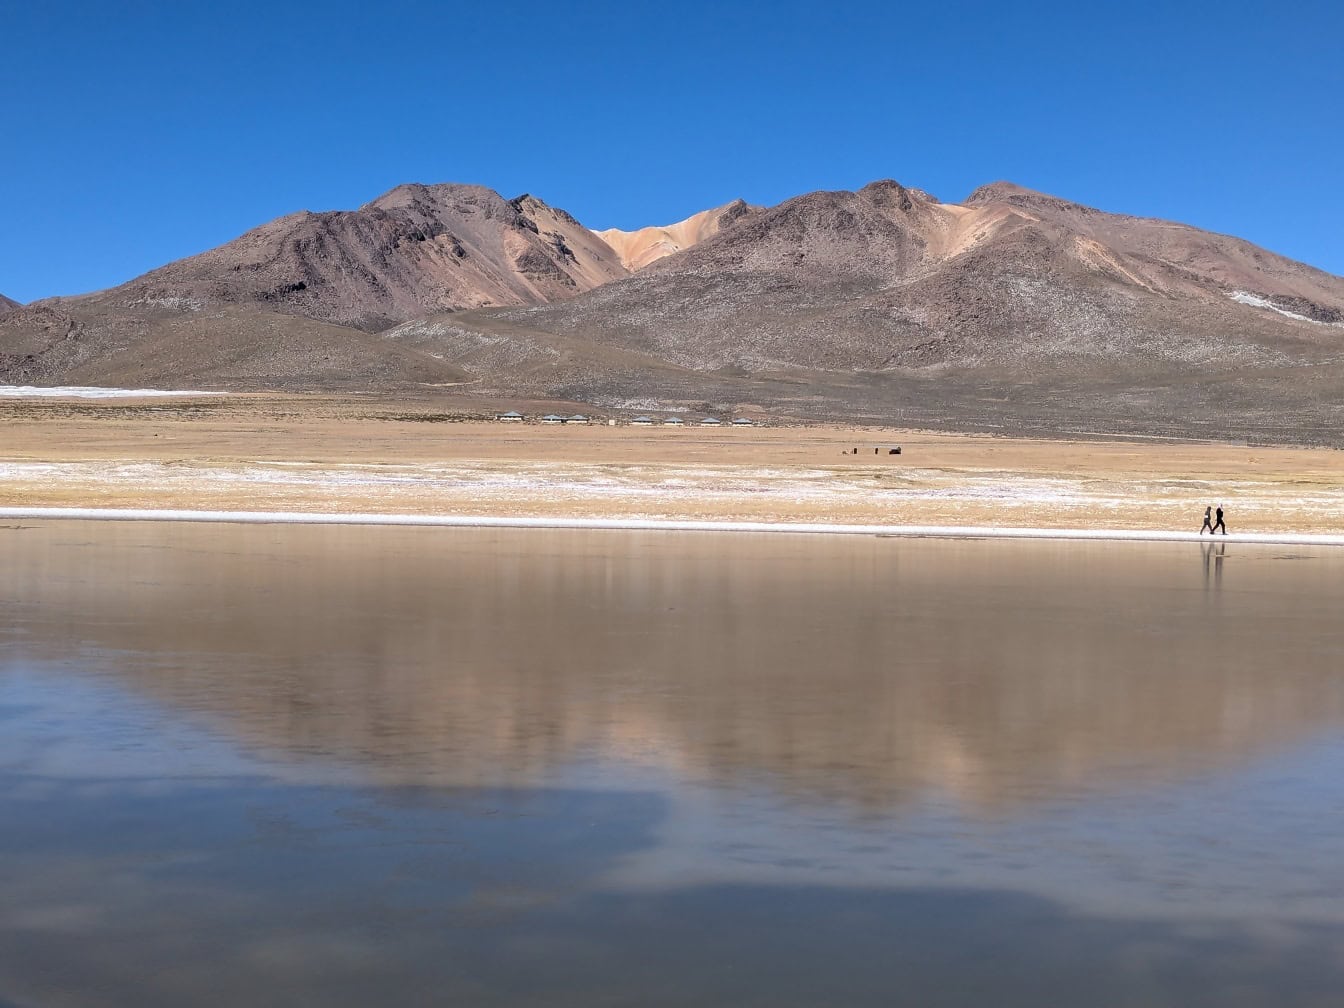 Panorama över sjön Salinas, en saltsjö i Arequipa i Anderna i Peru vatten med berg i bakgrunden